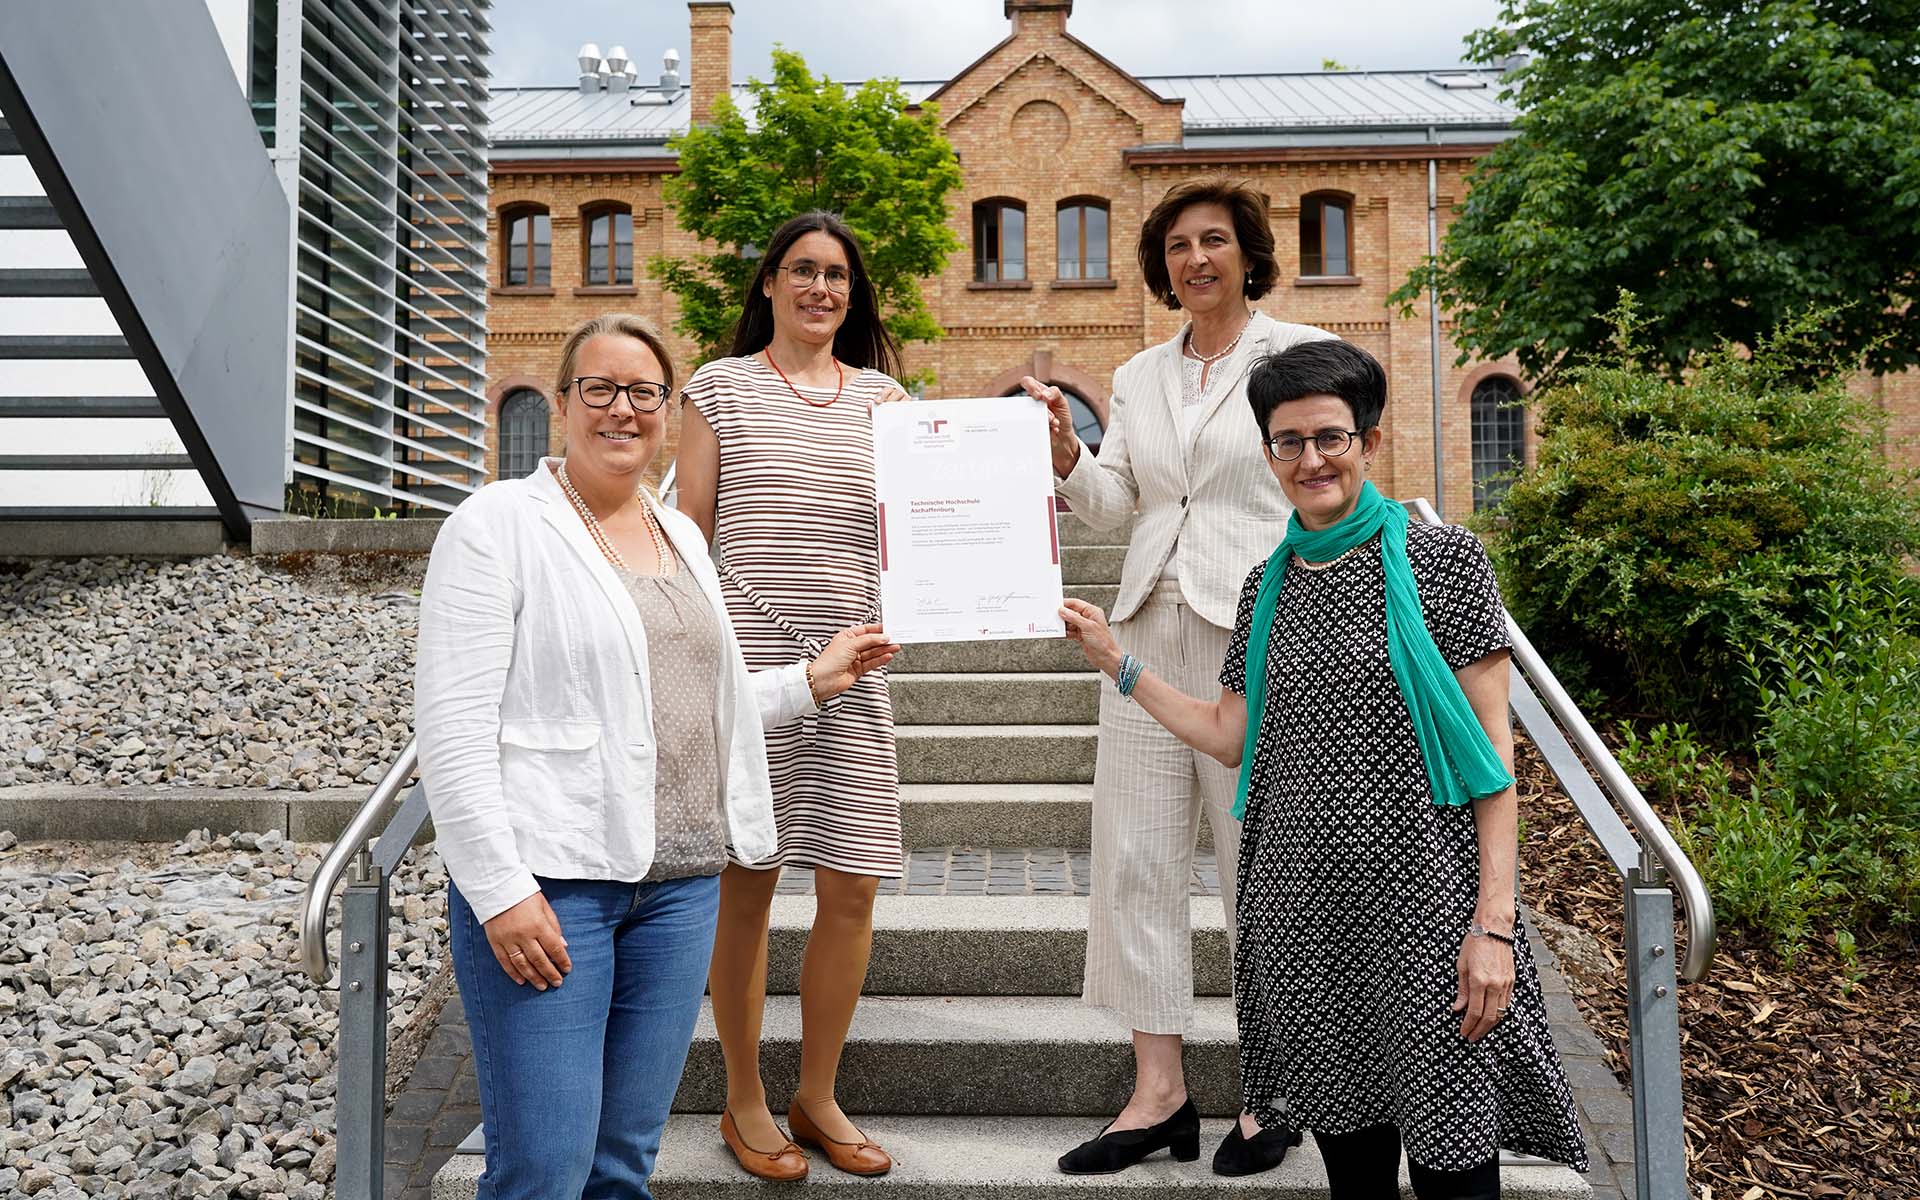 Vier Frauen stehen lächelnd auf einer Treppe vor einem Gebäude und halten ein Blatt Papier fest